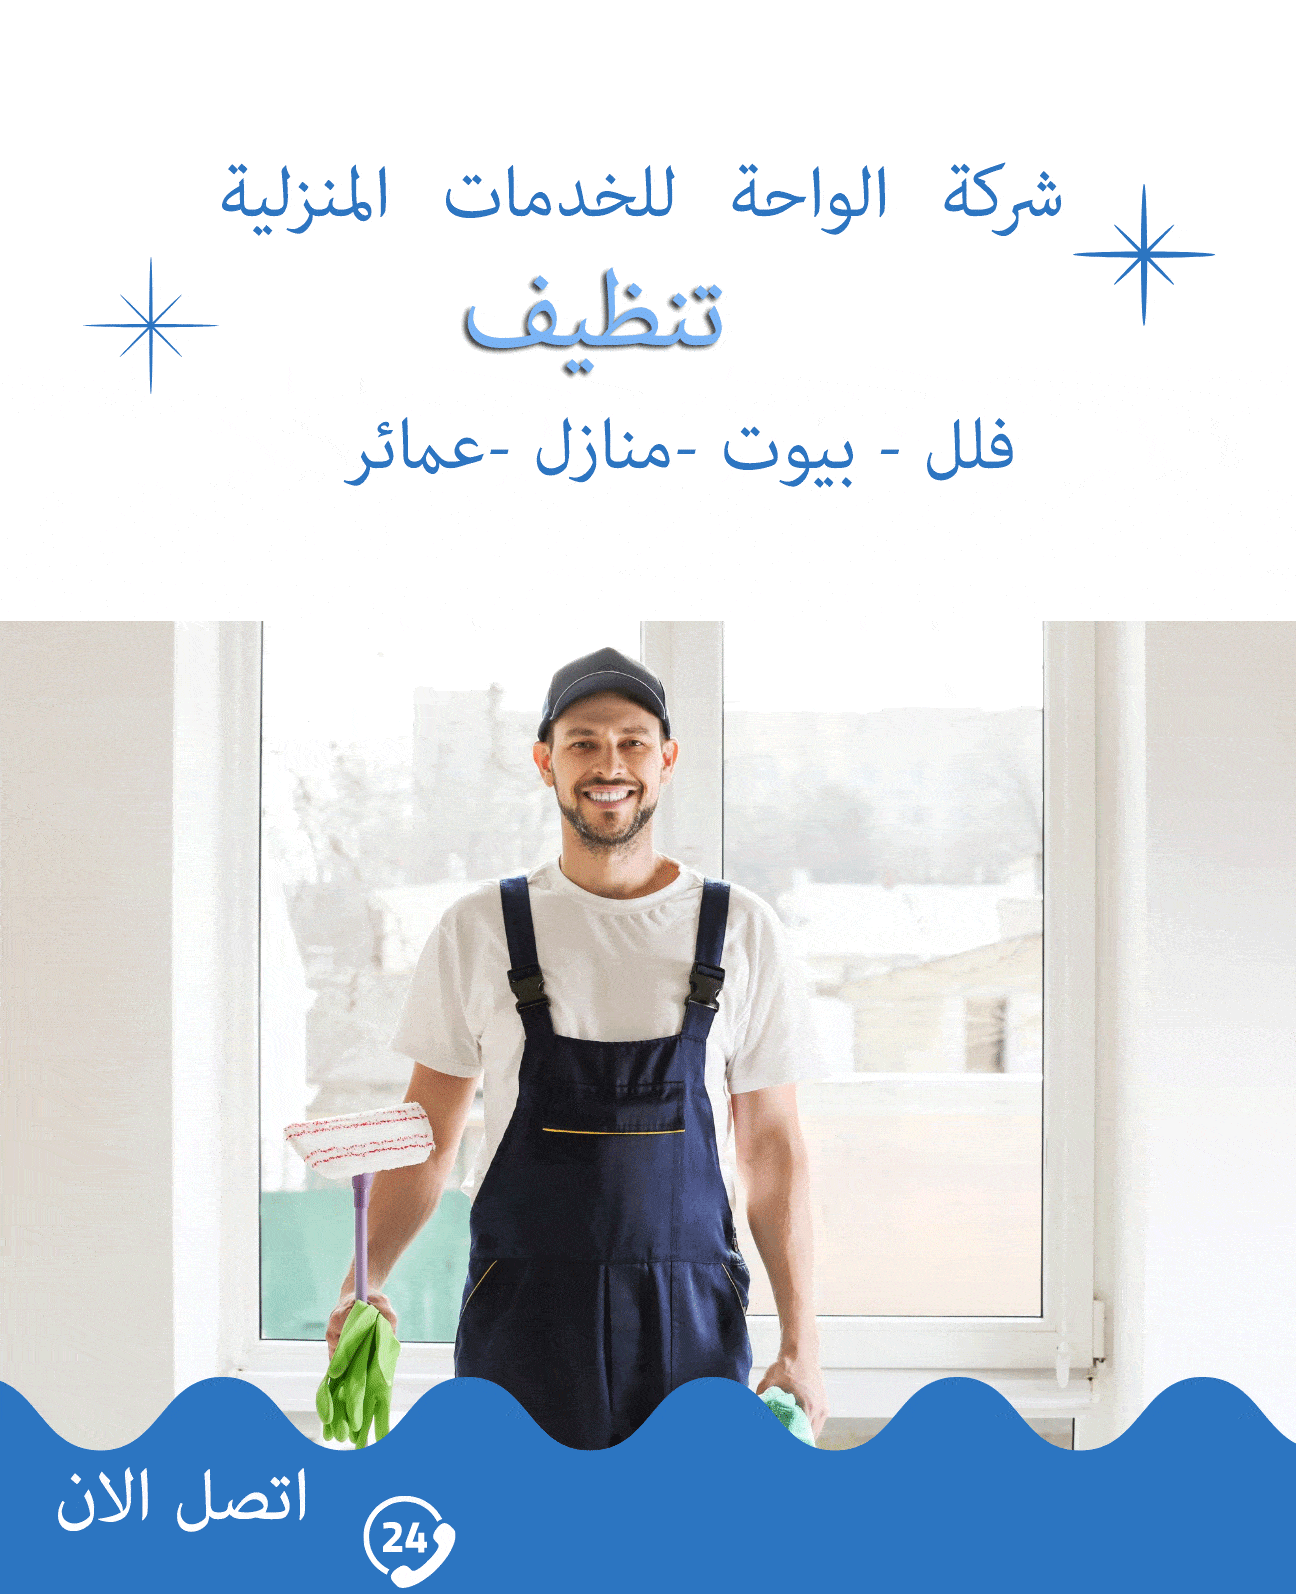 ماهي ارخص شركة تنظيف في الرياض